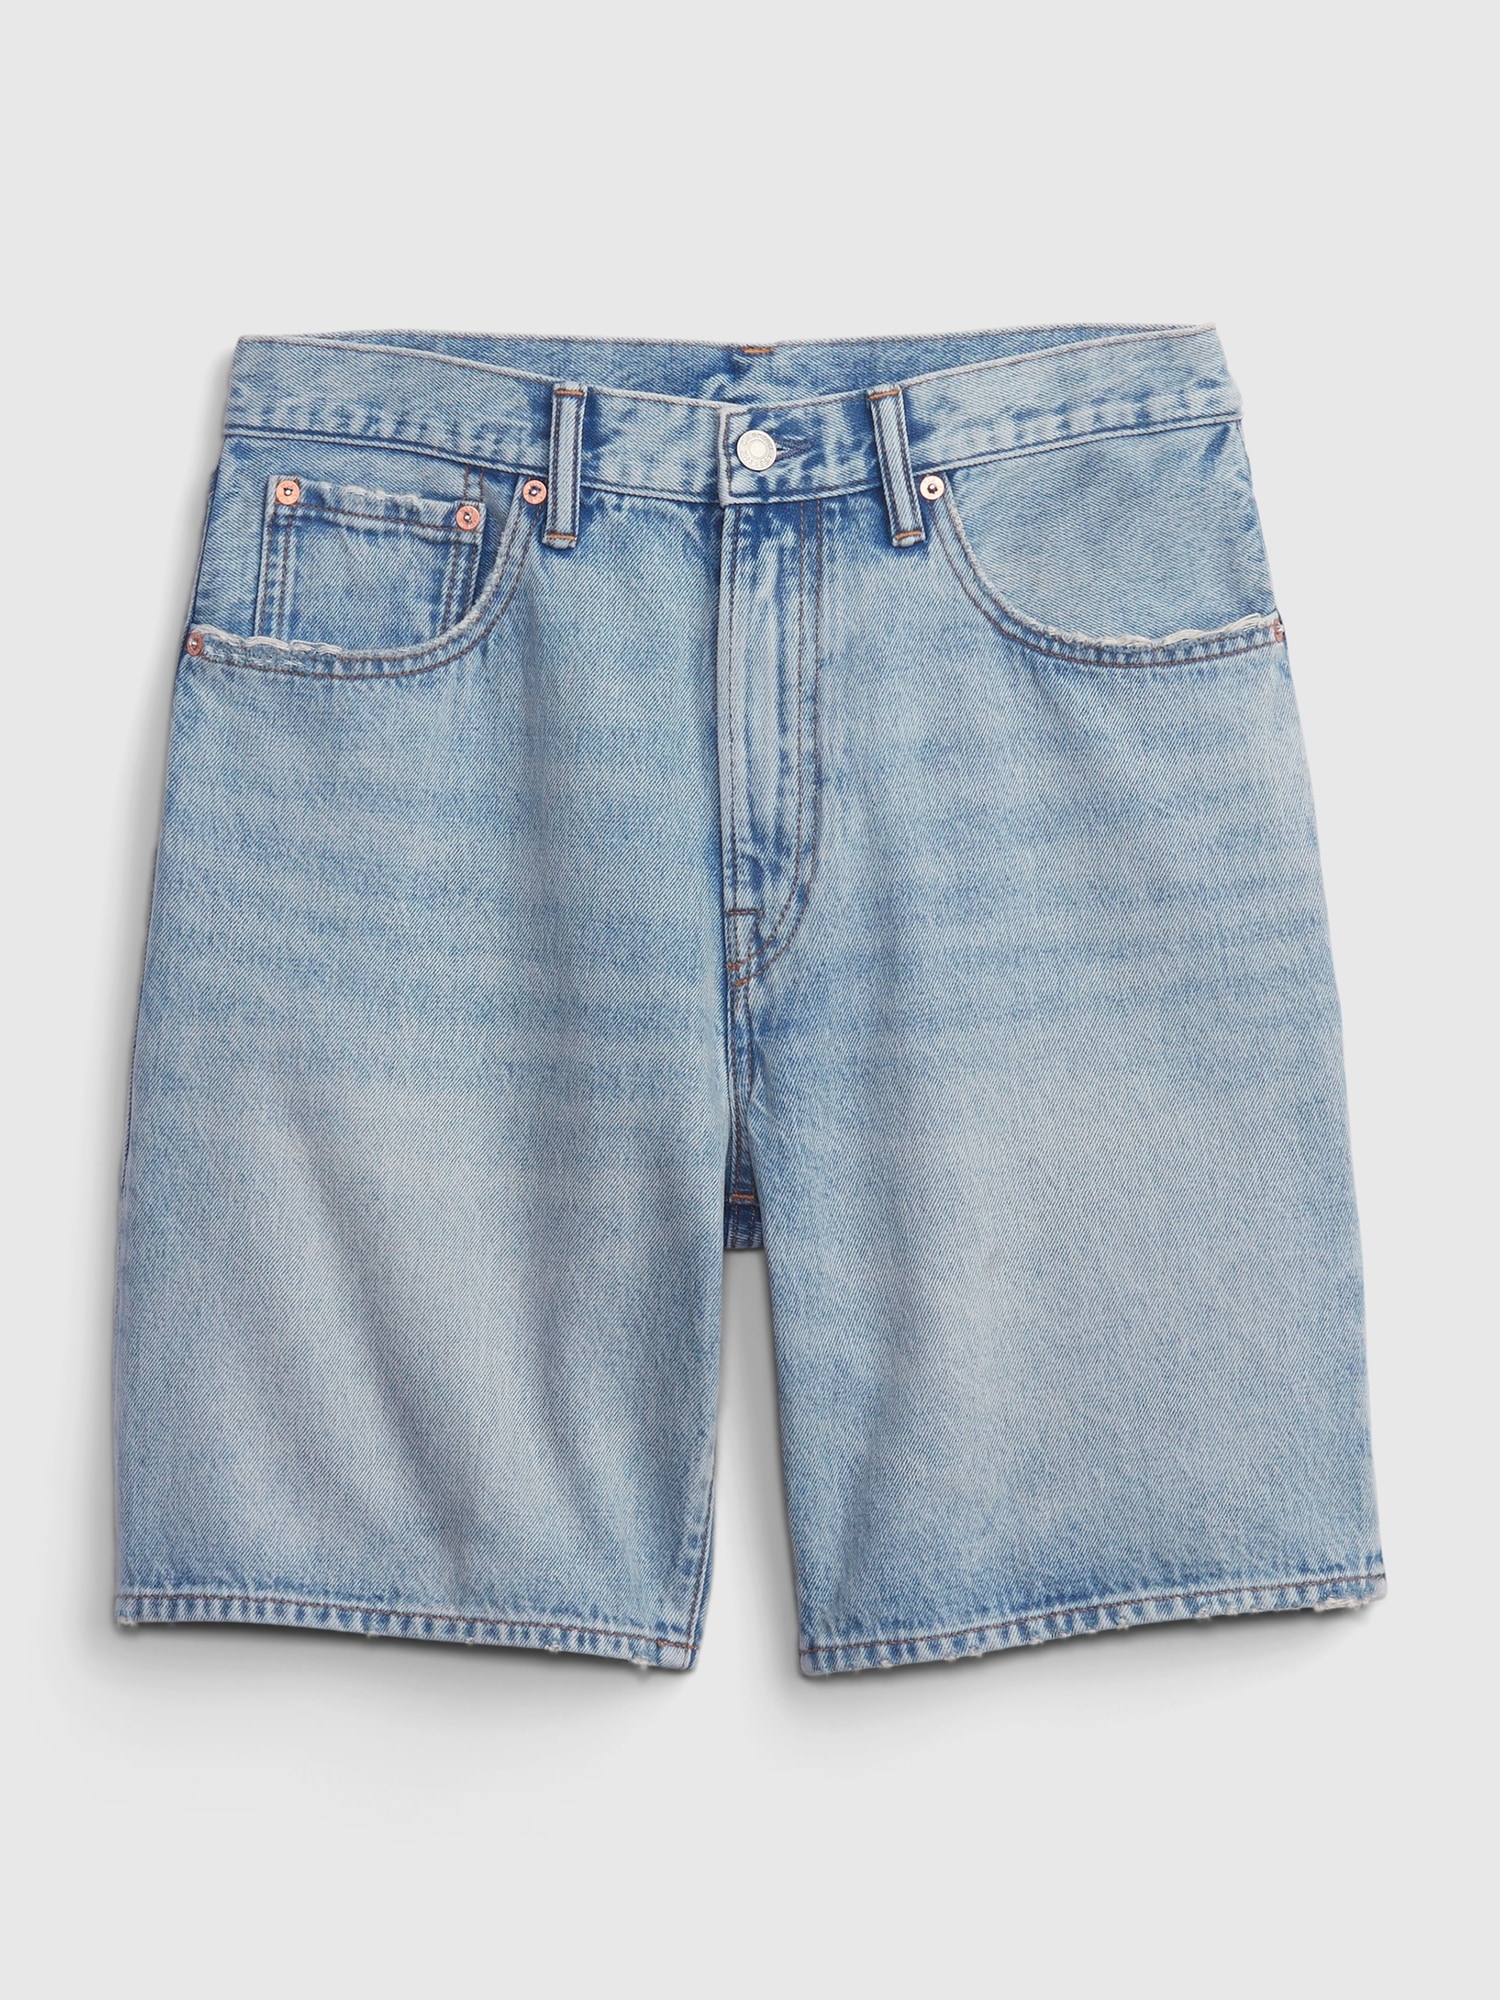 90s Loose Denim Shorts | Gap